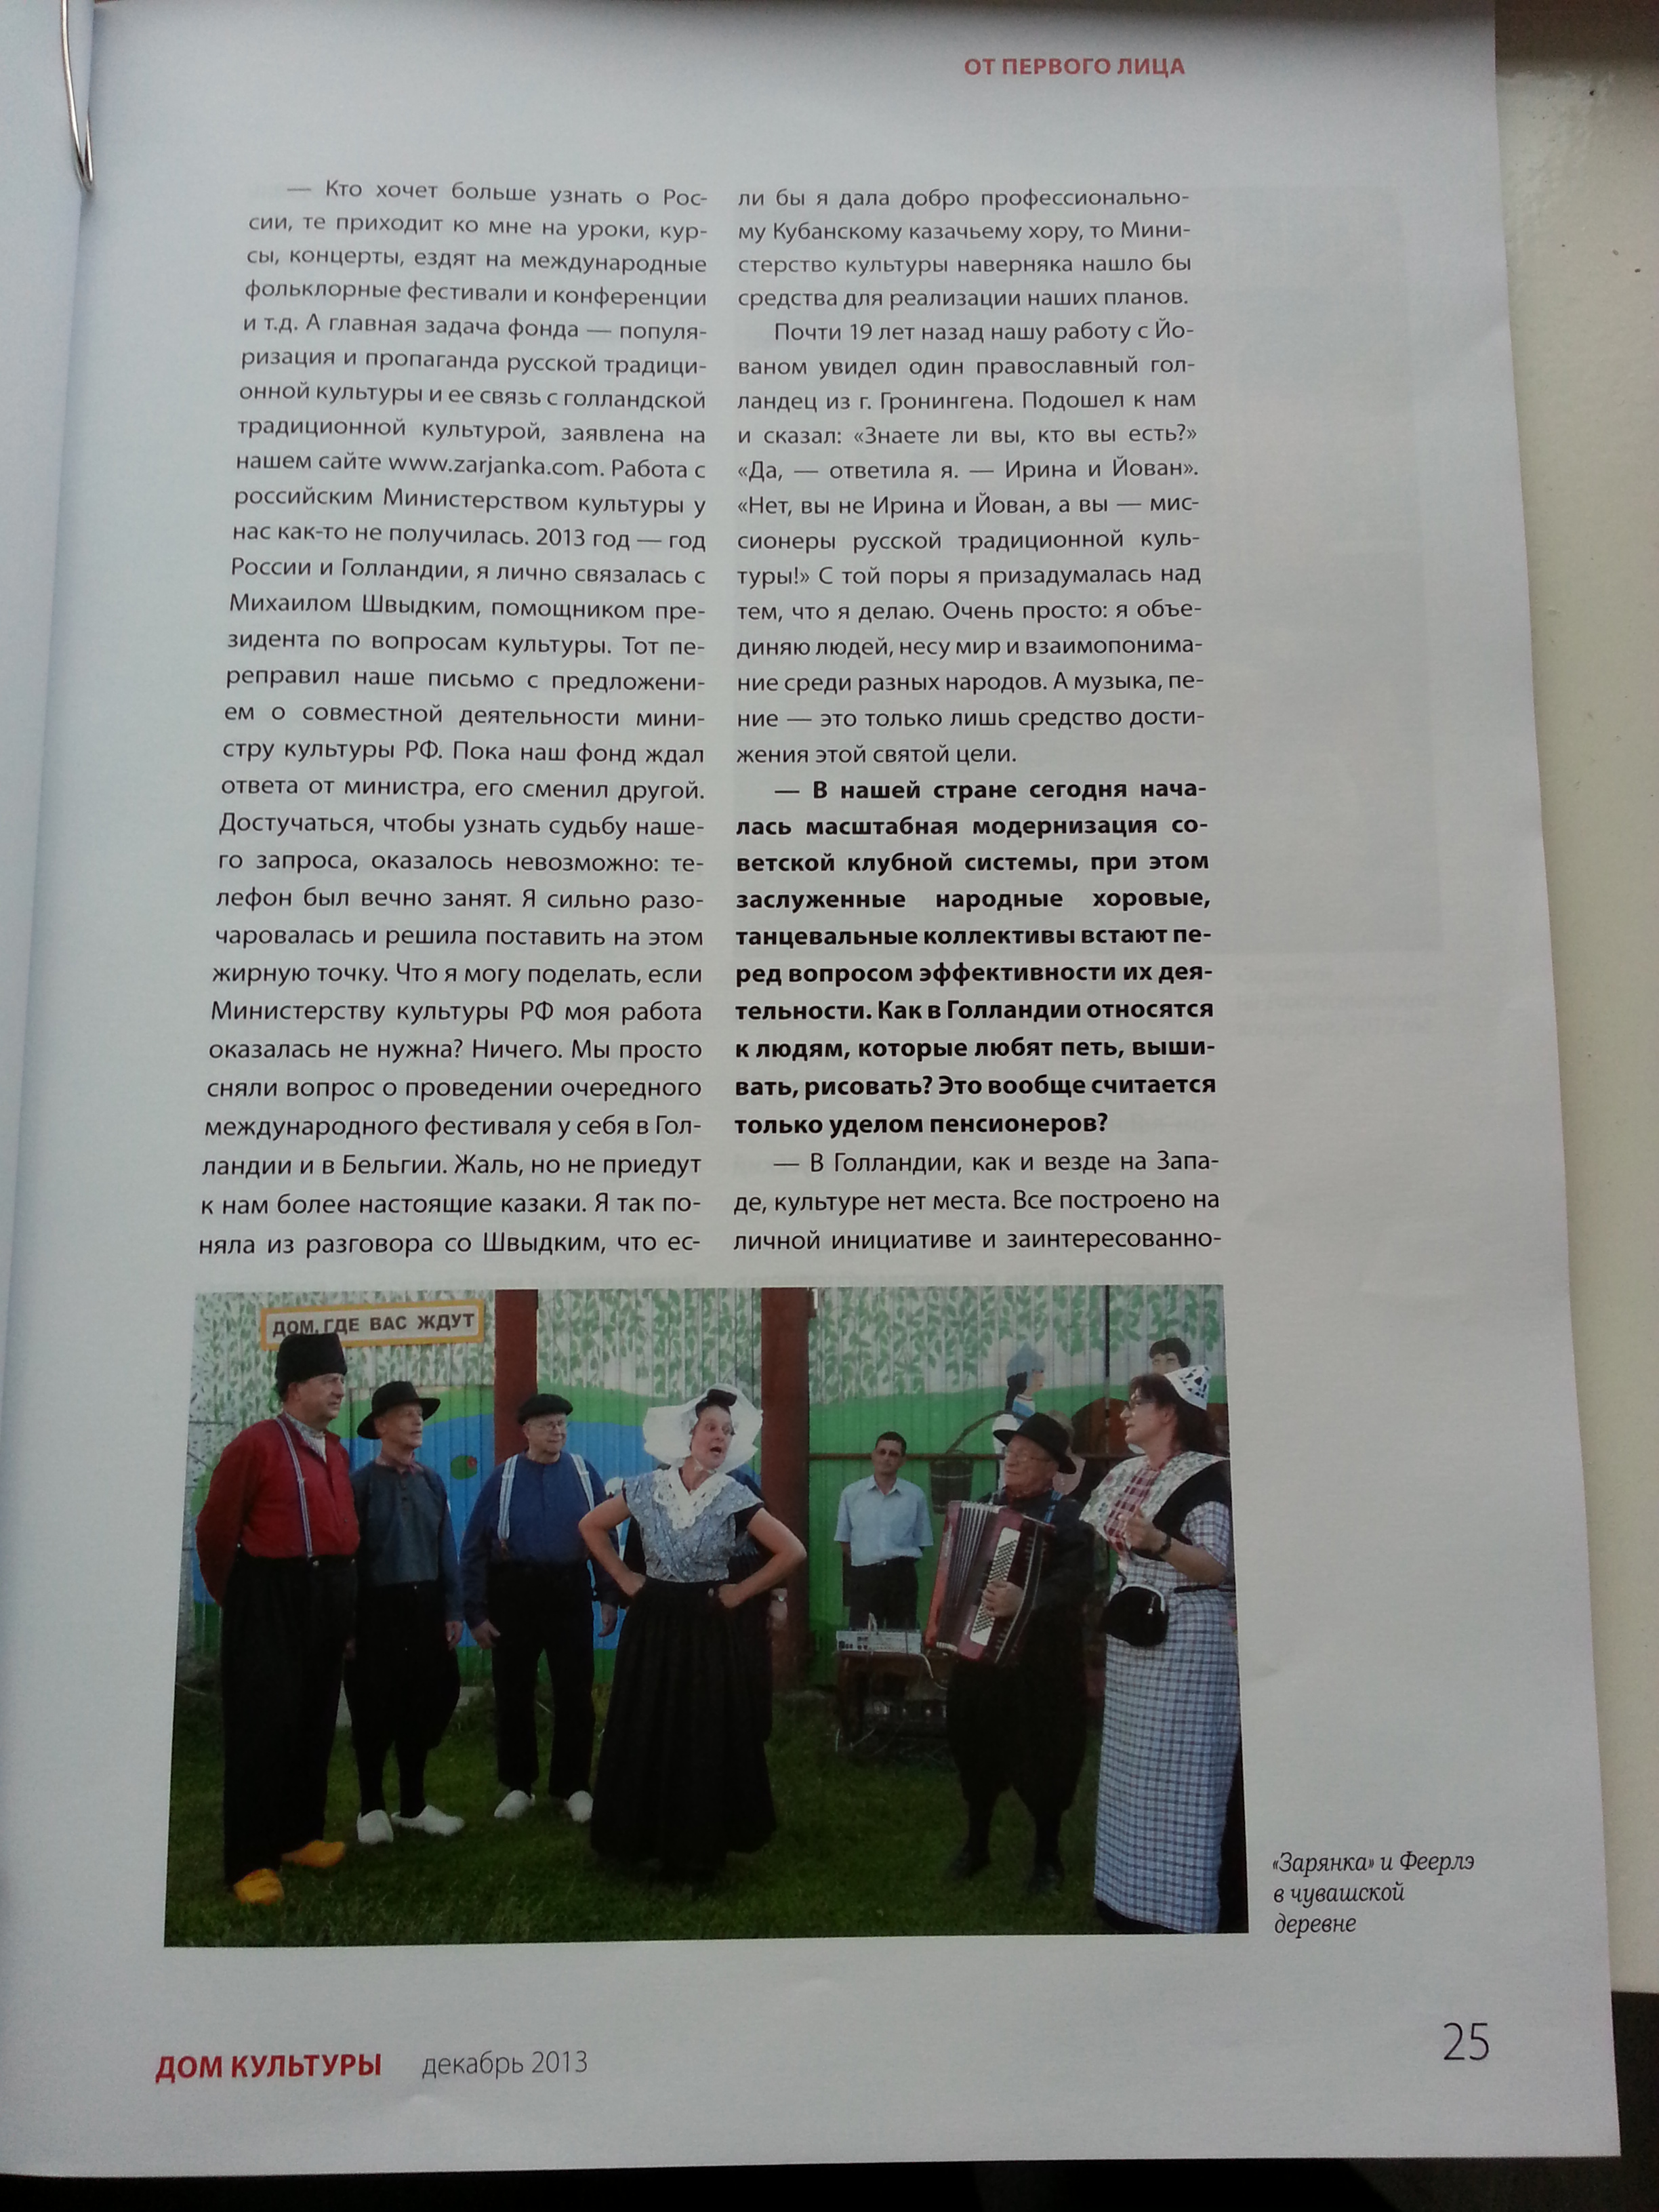 tijdschrift "Huis van cultuur" dec. 2013 Moskou. Irina Raspopova: Overal propagandeer ik echte folklore muziek van Rusland"